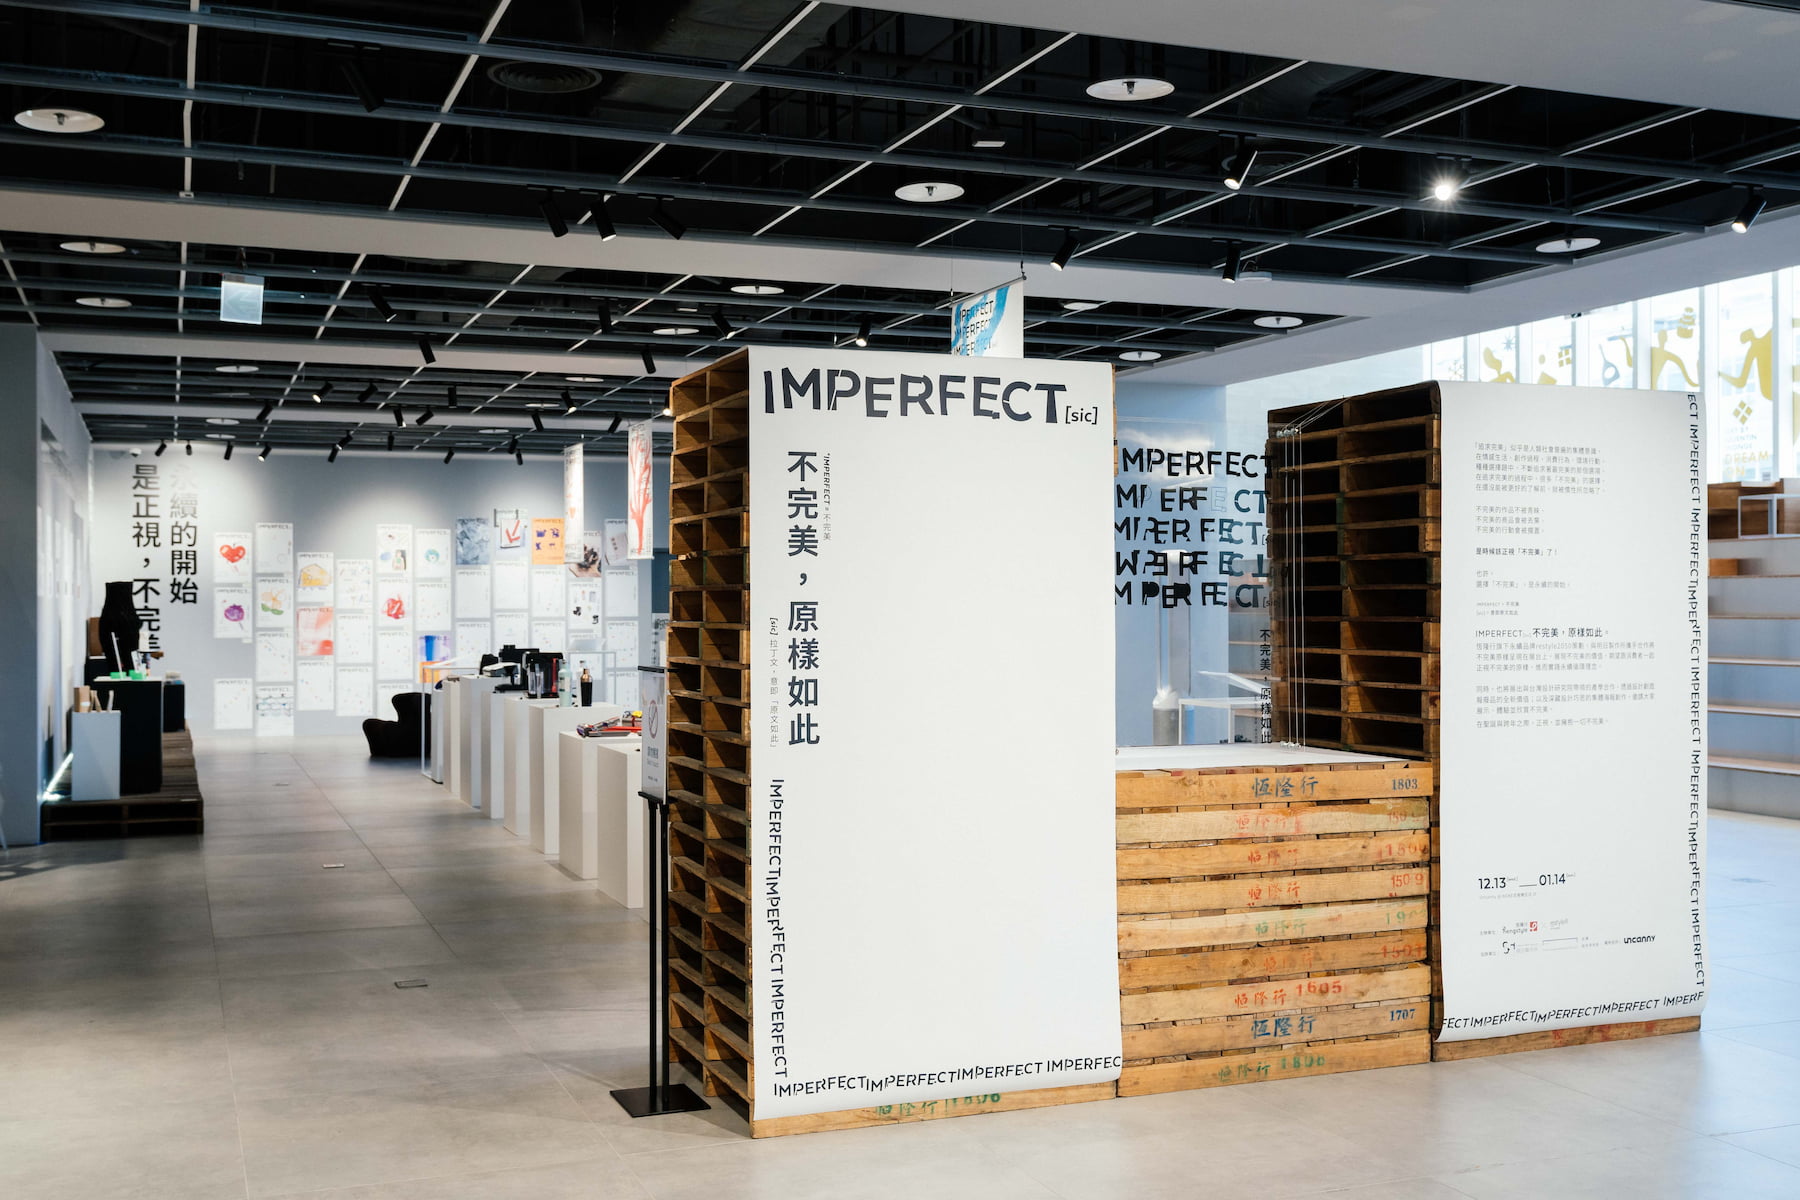 一場「不完美」的展覽——恆隆行「IMPERFECT[sic]」賦予瑕疵商品永續美學新價值